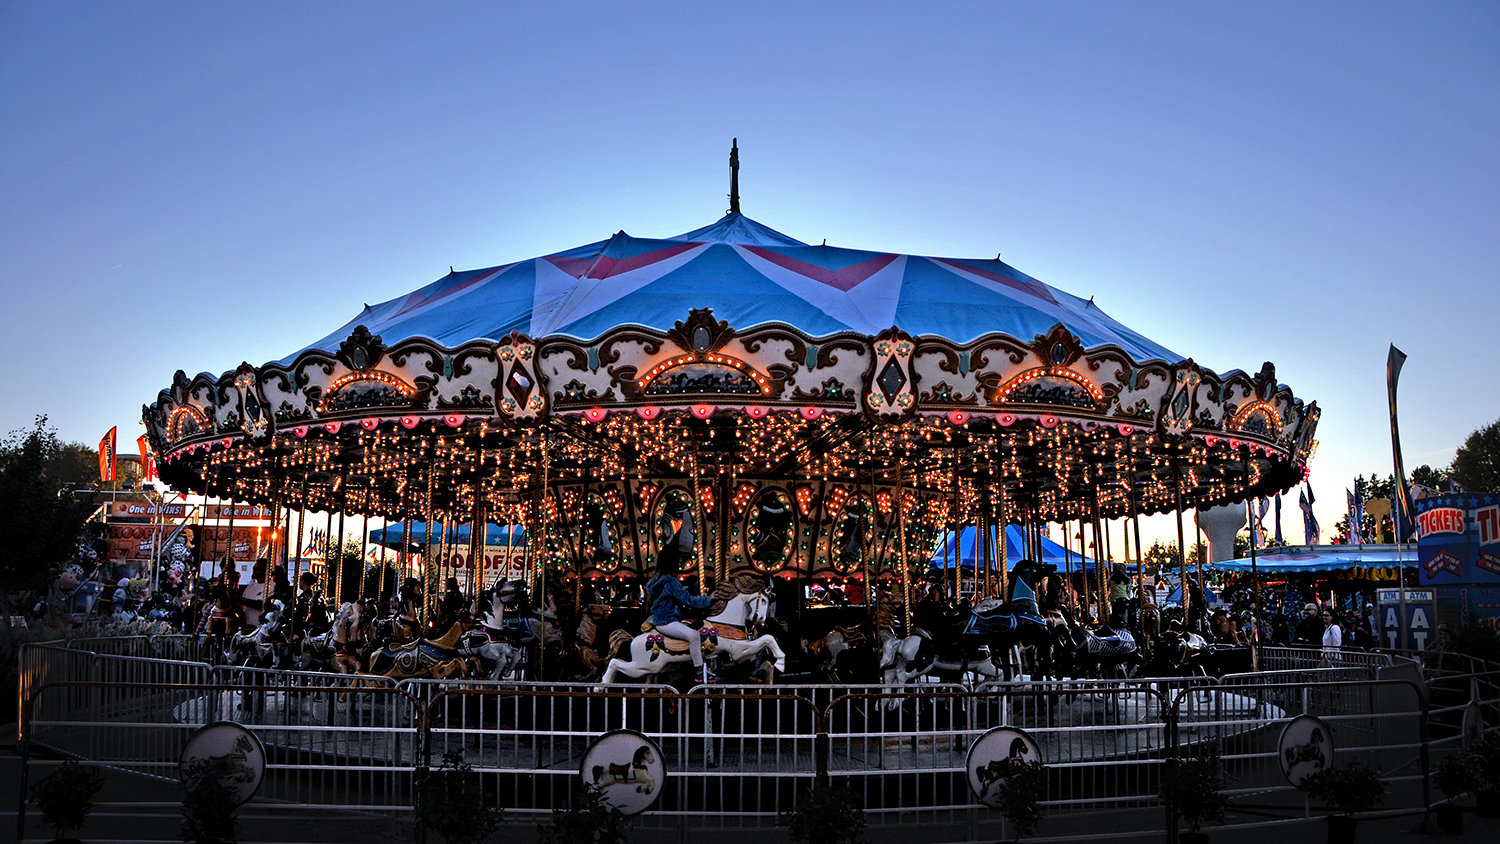 At dusk, children ride a brightly-lit merry-go-round.